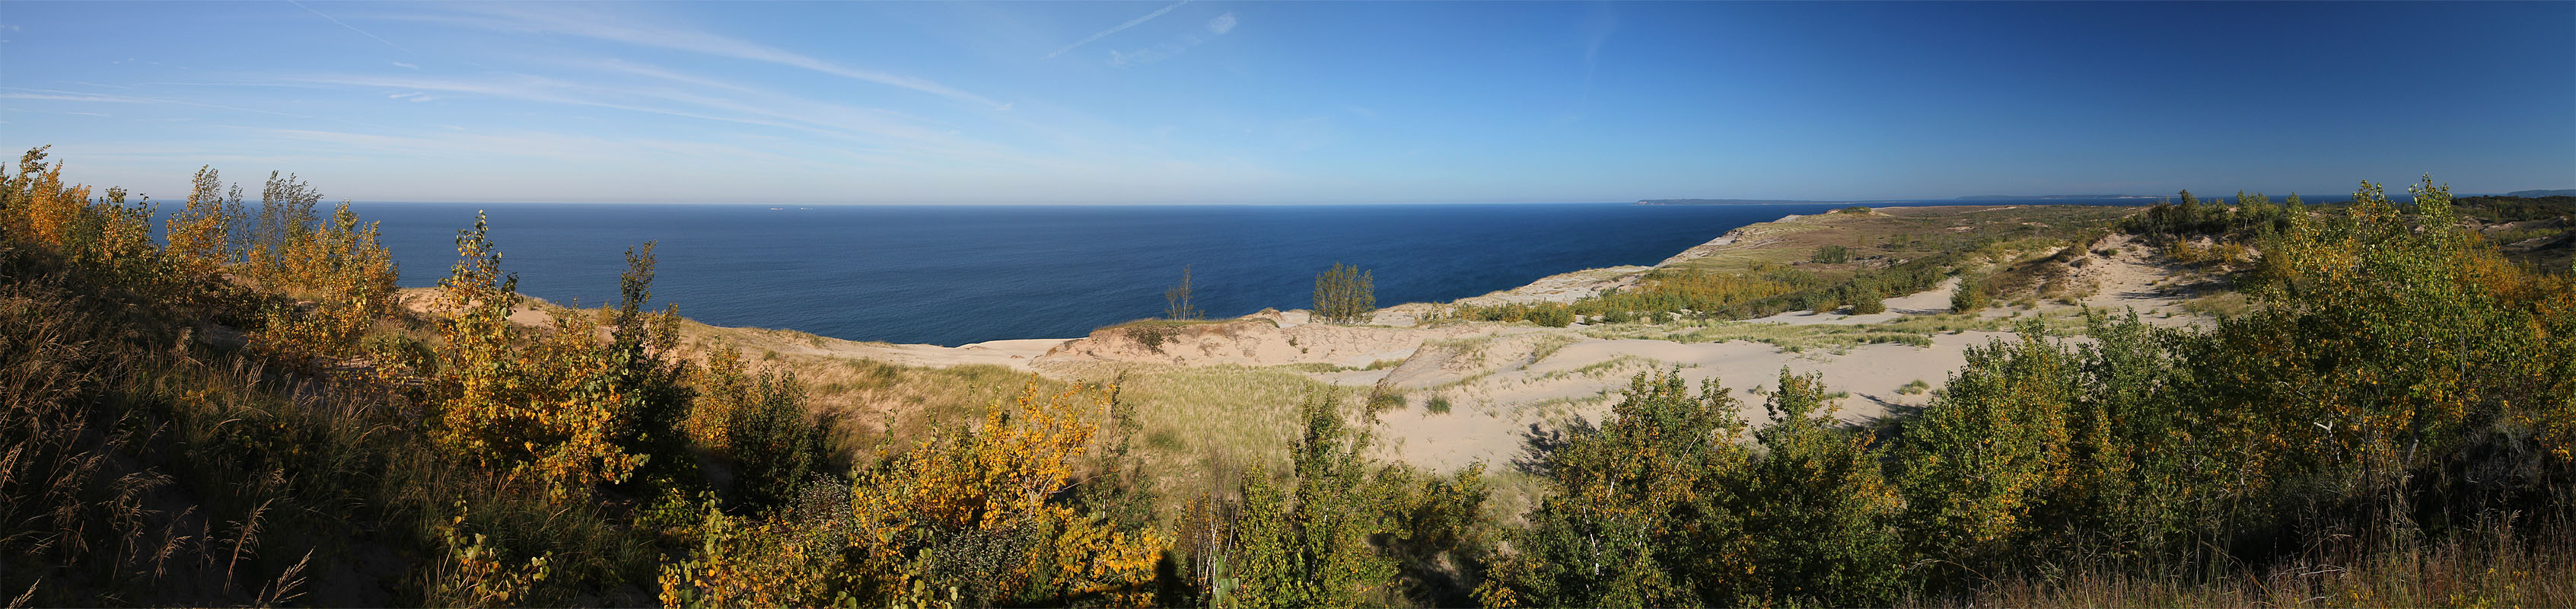 SBDNL Dunes Panorama2 cropped.jpg